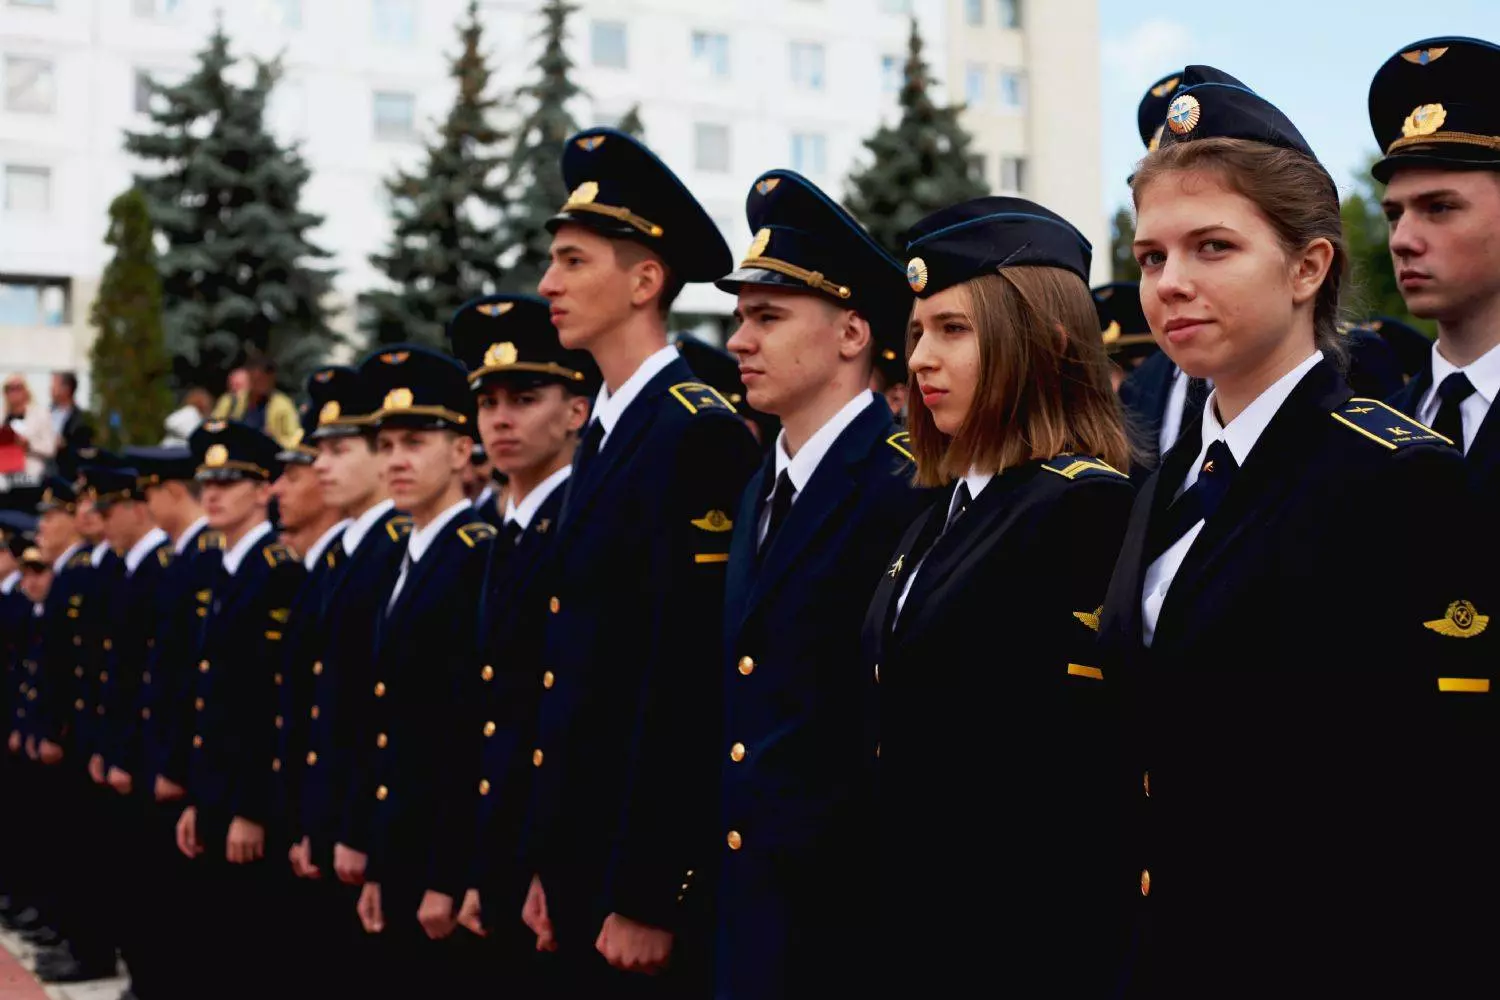 Высшего профессионального образования ульяновское высшее авиационное училище гражданской авиации (институт)